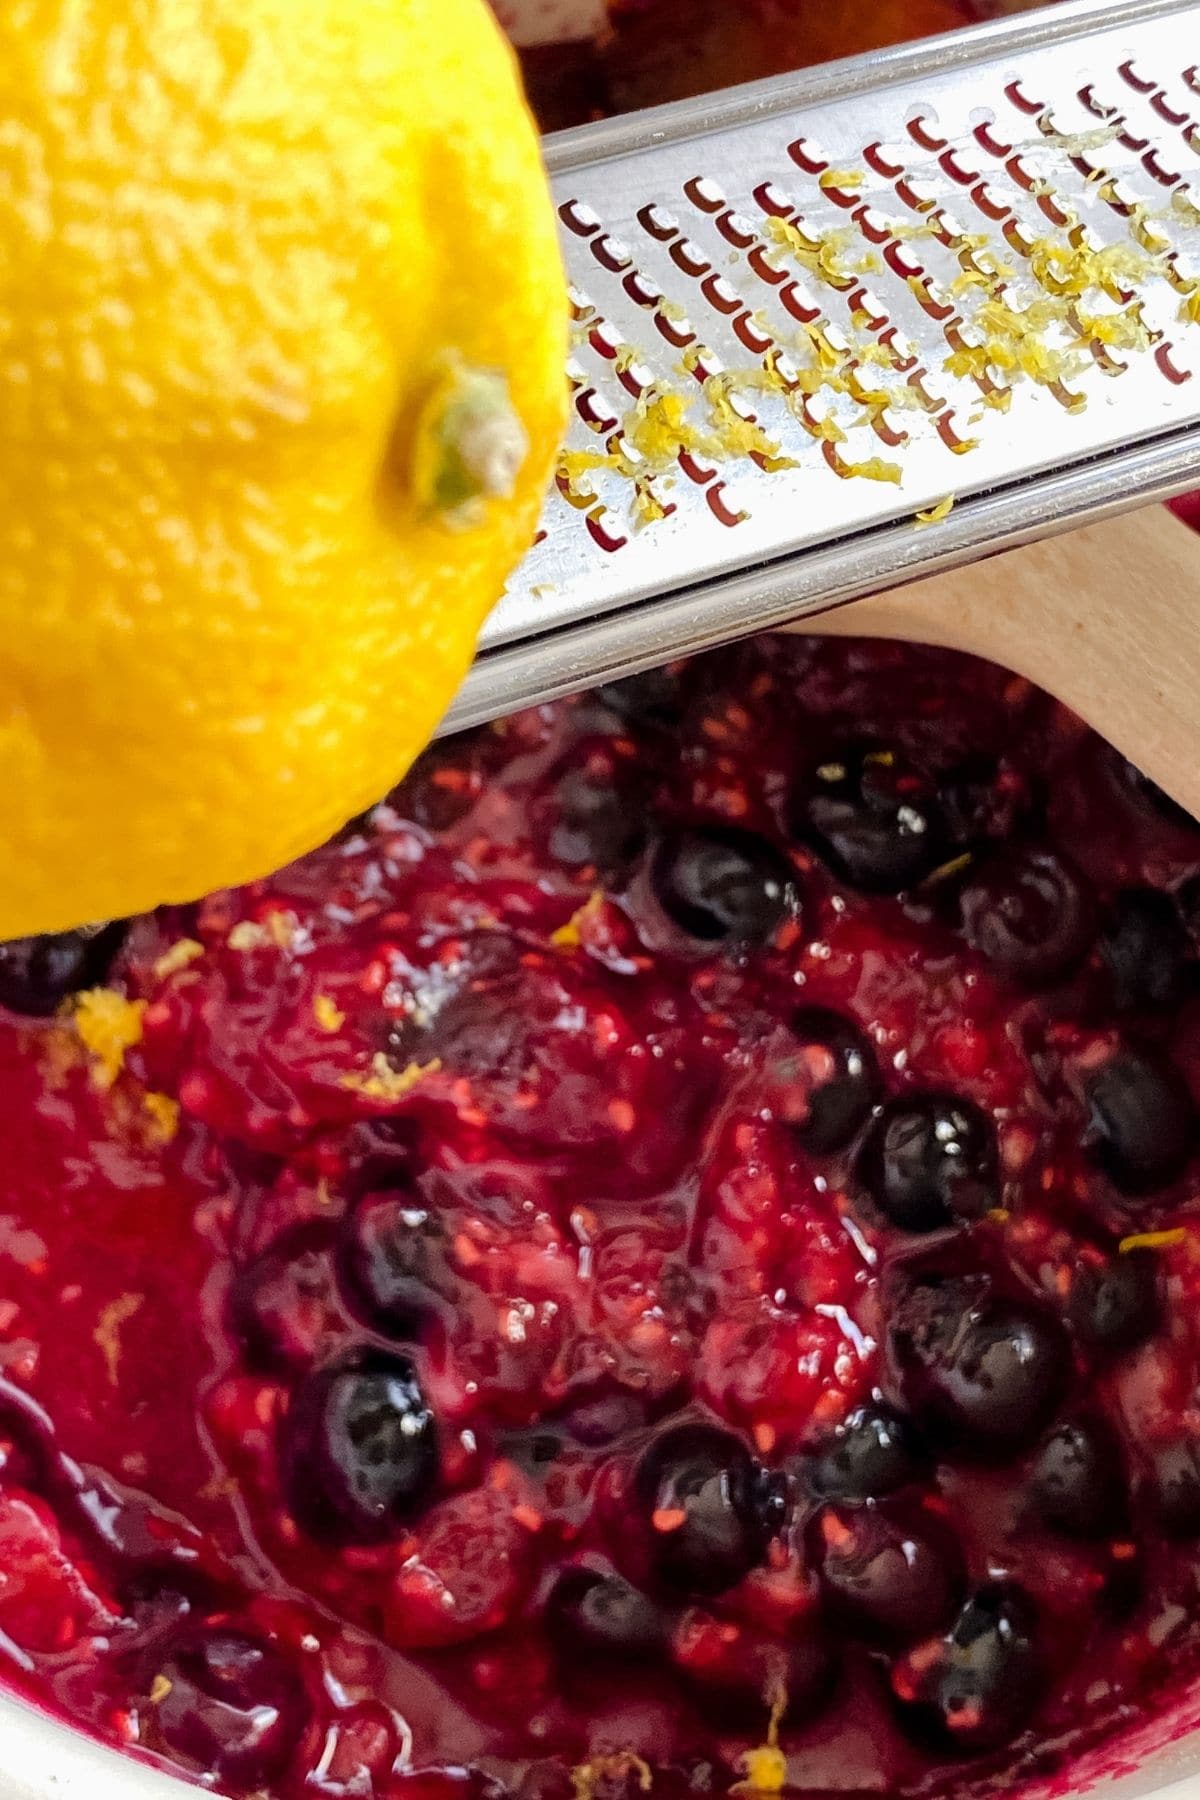 Grating lemon zest into berries